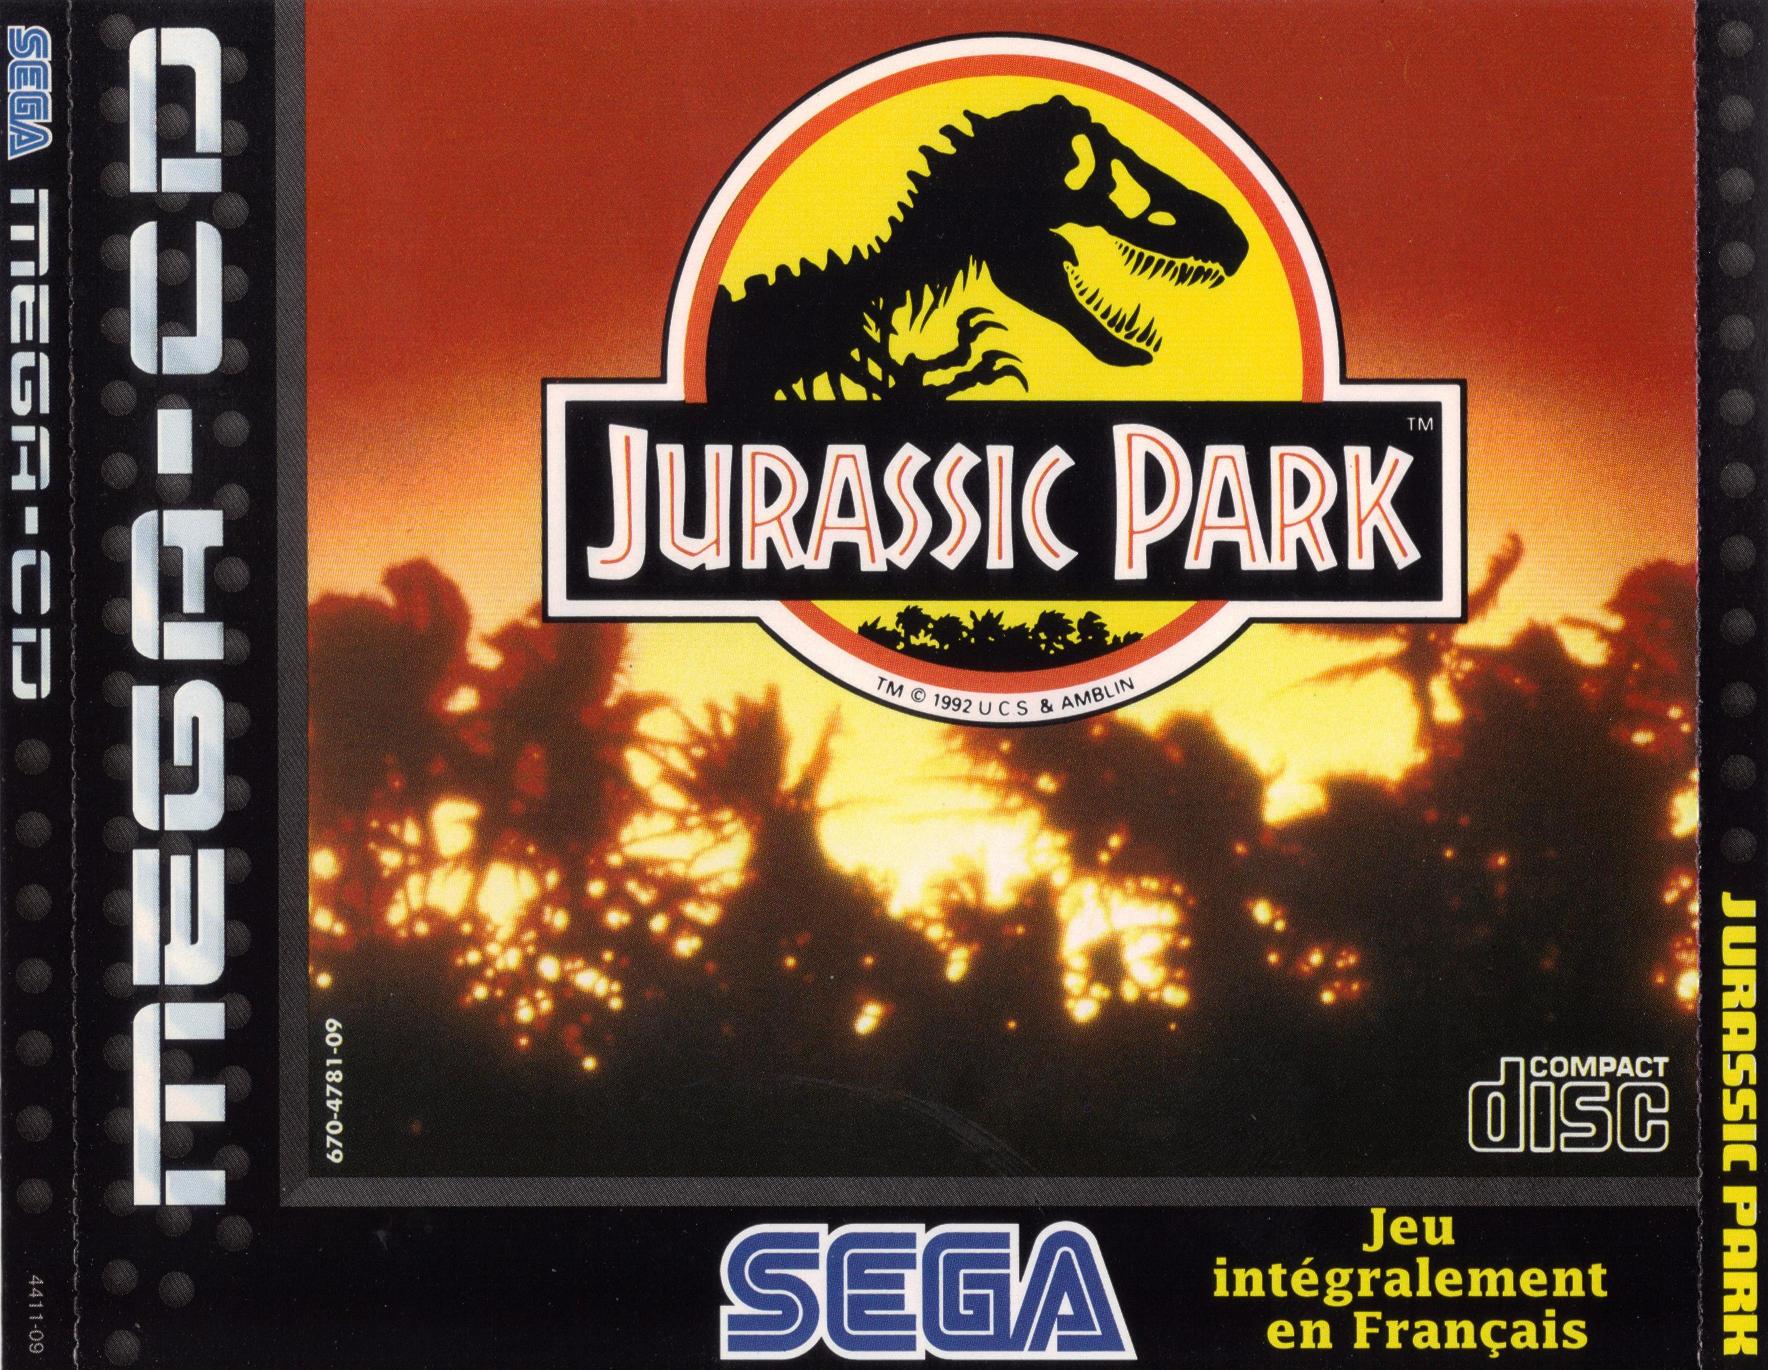 Игра сега парк юрского. Юрасик парк сега. Обложка игры Jurassic Park Sega. Jurassic Park 2 Sega обложка. Jurassic Park 2 Rampage Edition Sega.